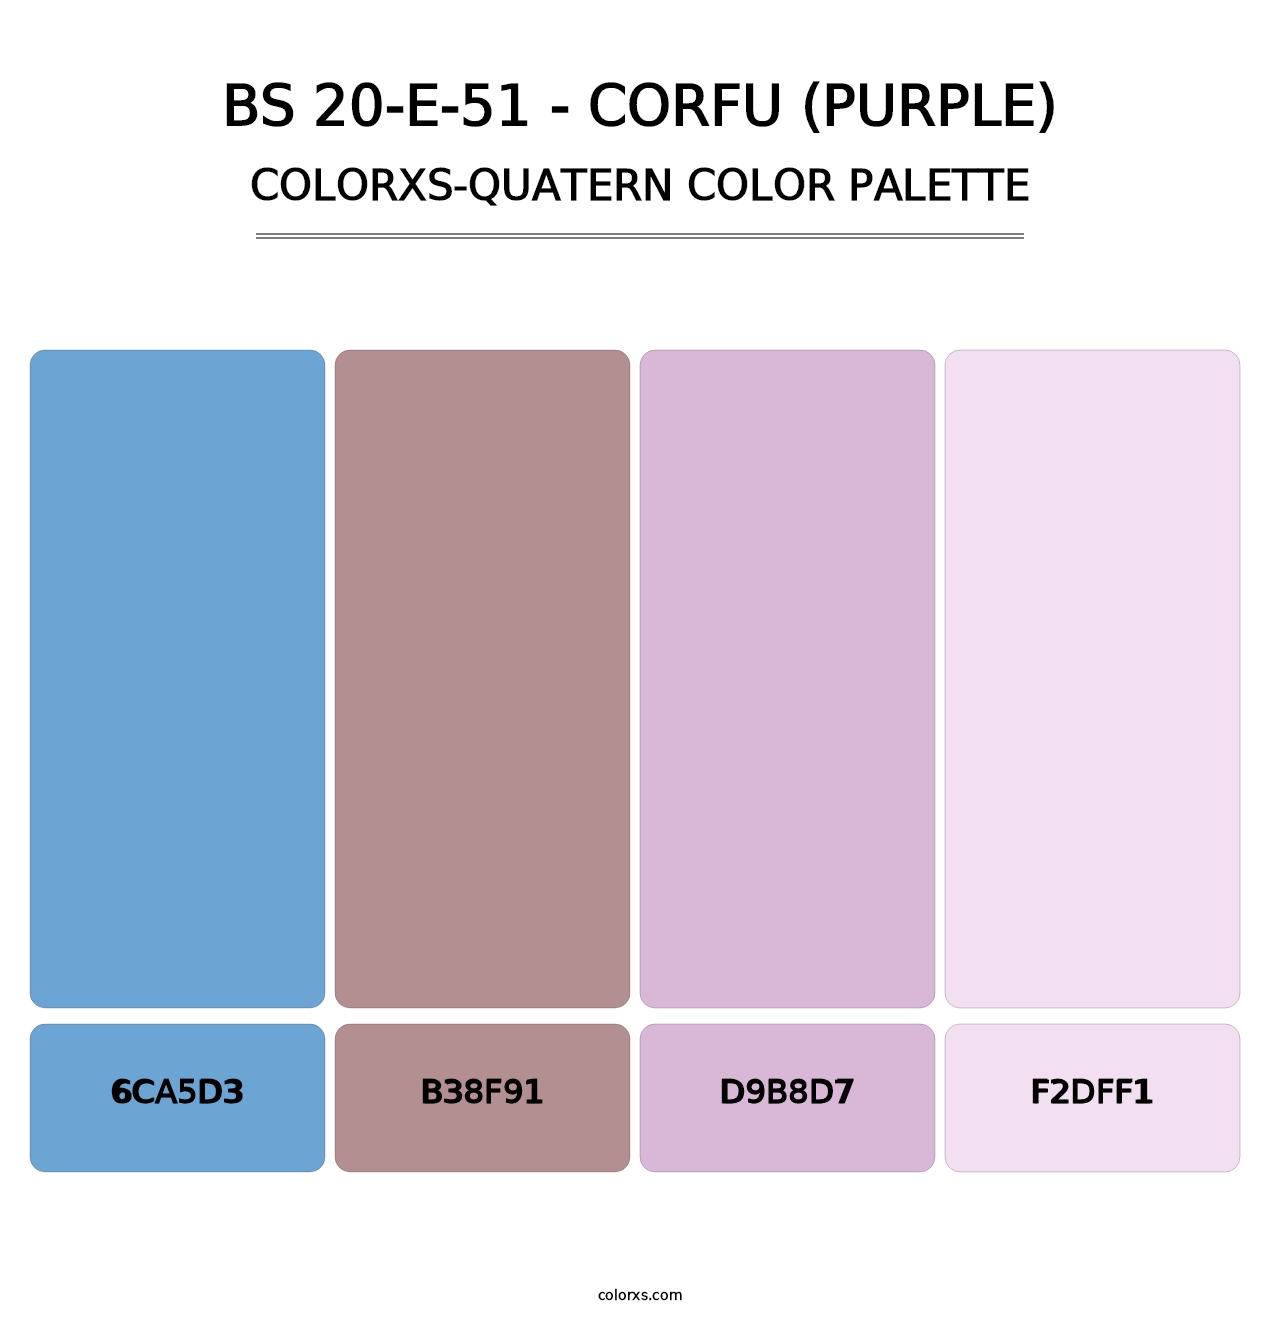 BS 20-E-51 - Corfu (Purple) - Colorxs Quatern Palette